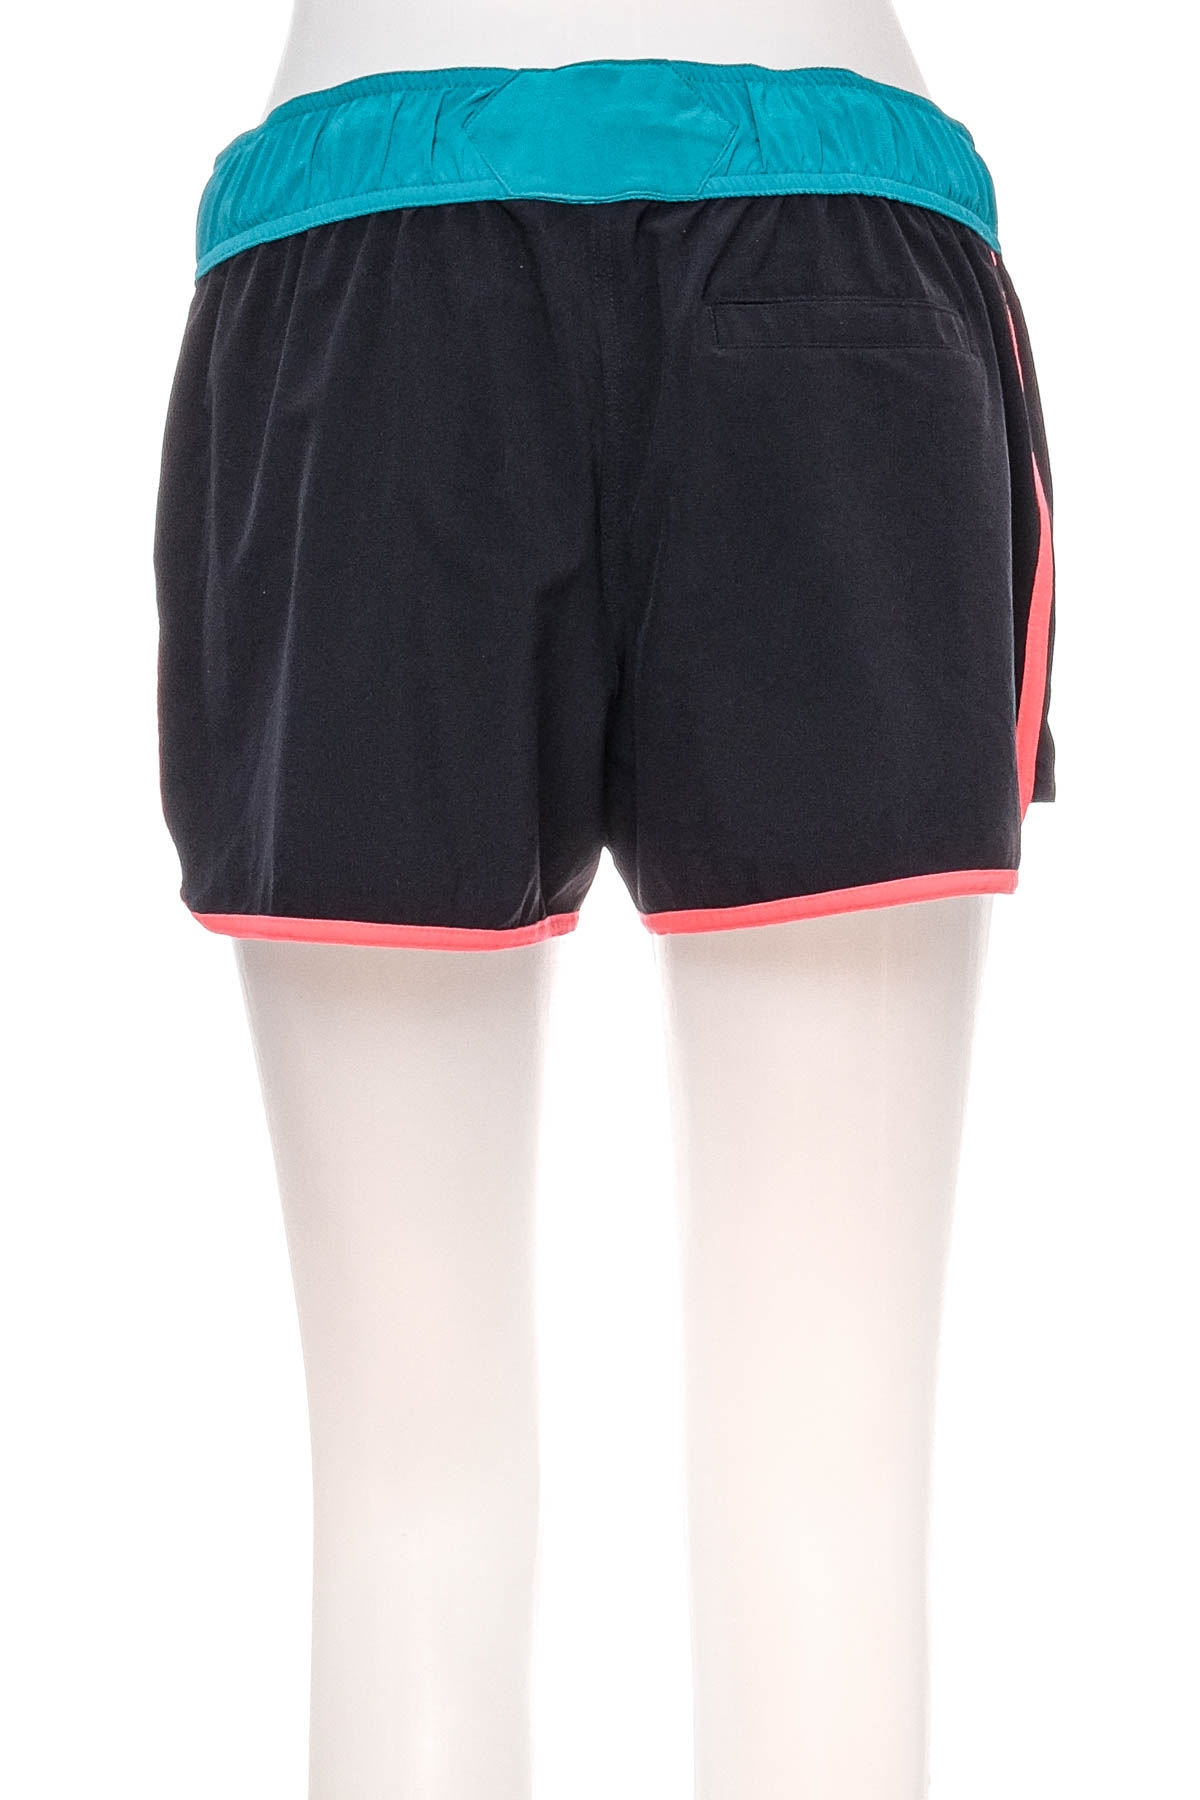 Women's shorts - OLAIAN - 1